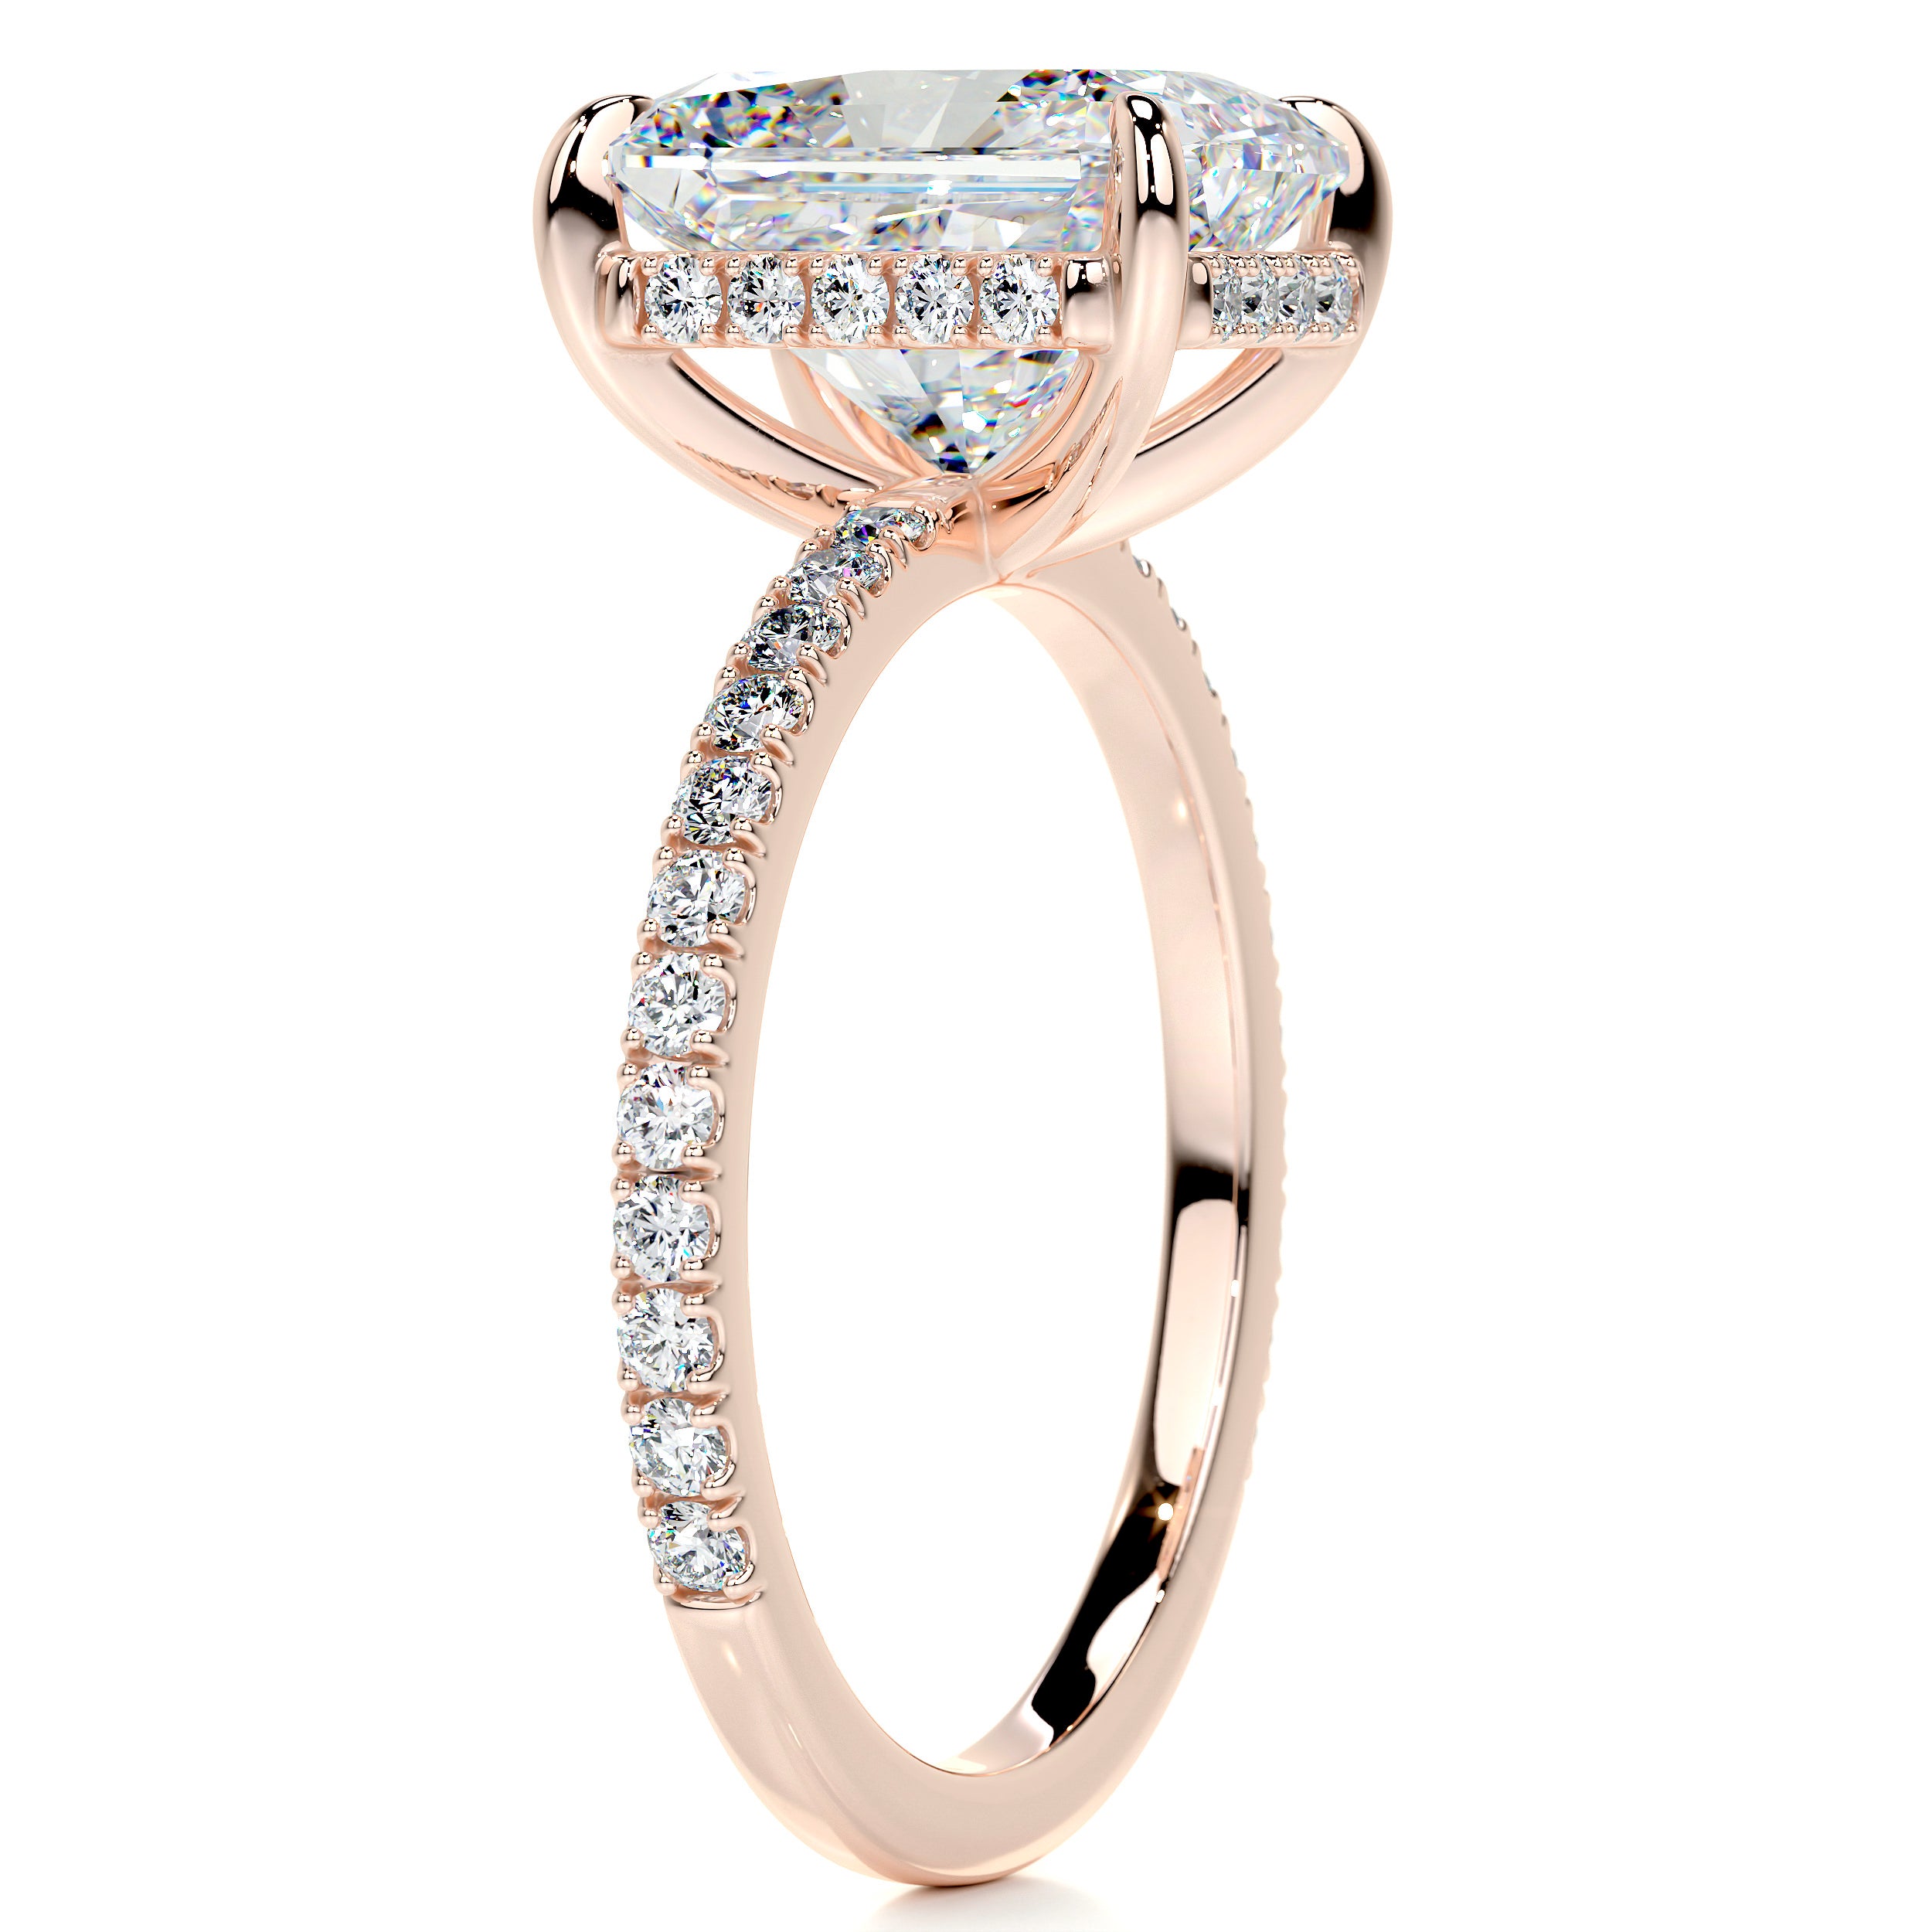 Luna Moissanite & Diamonds Ring   (4.2 Carat) -14K Rose Gold